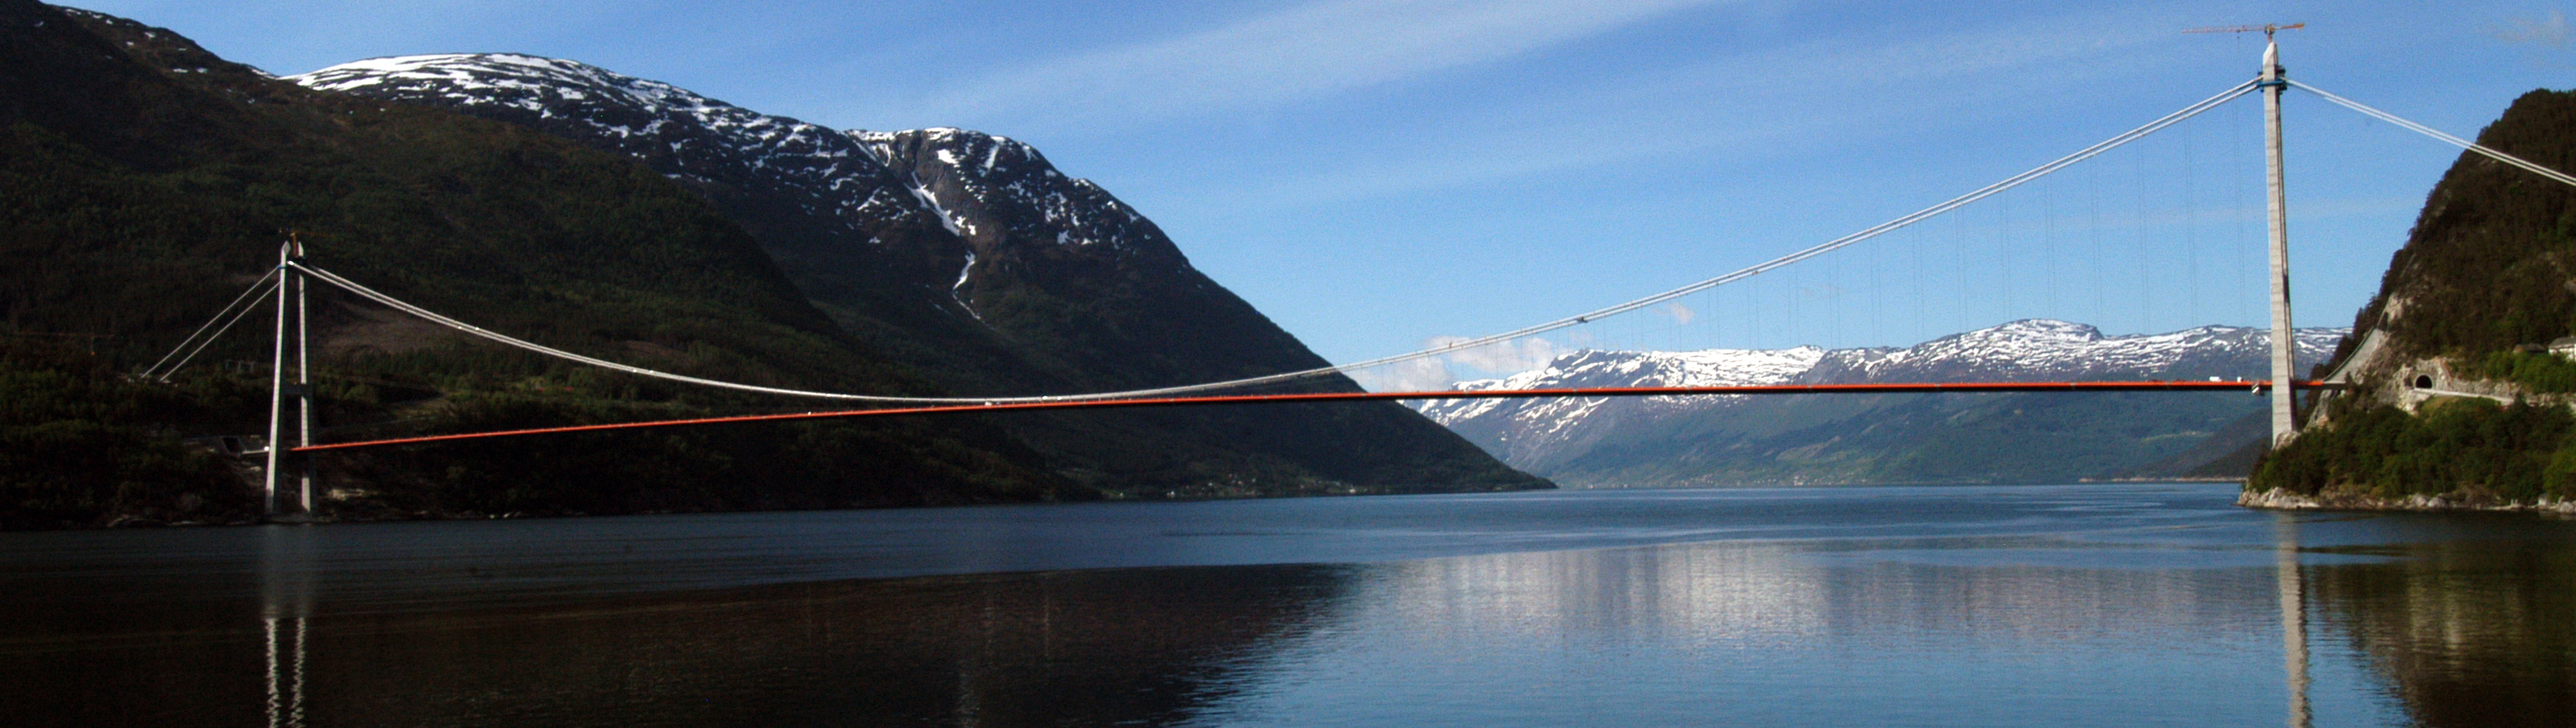 挪威哈当厄尔钢桥